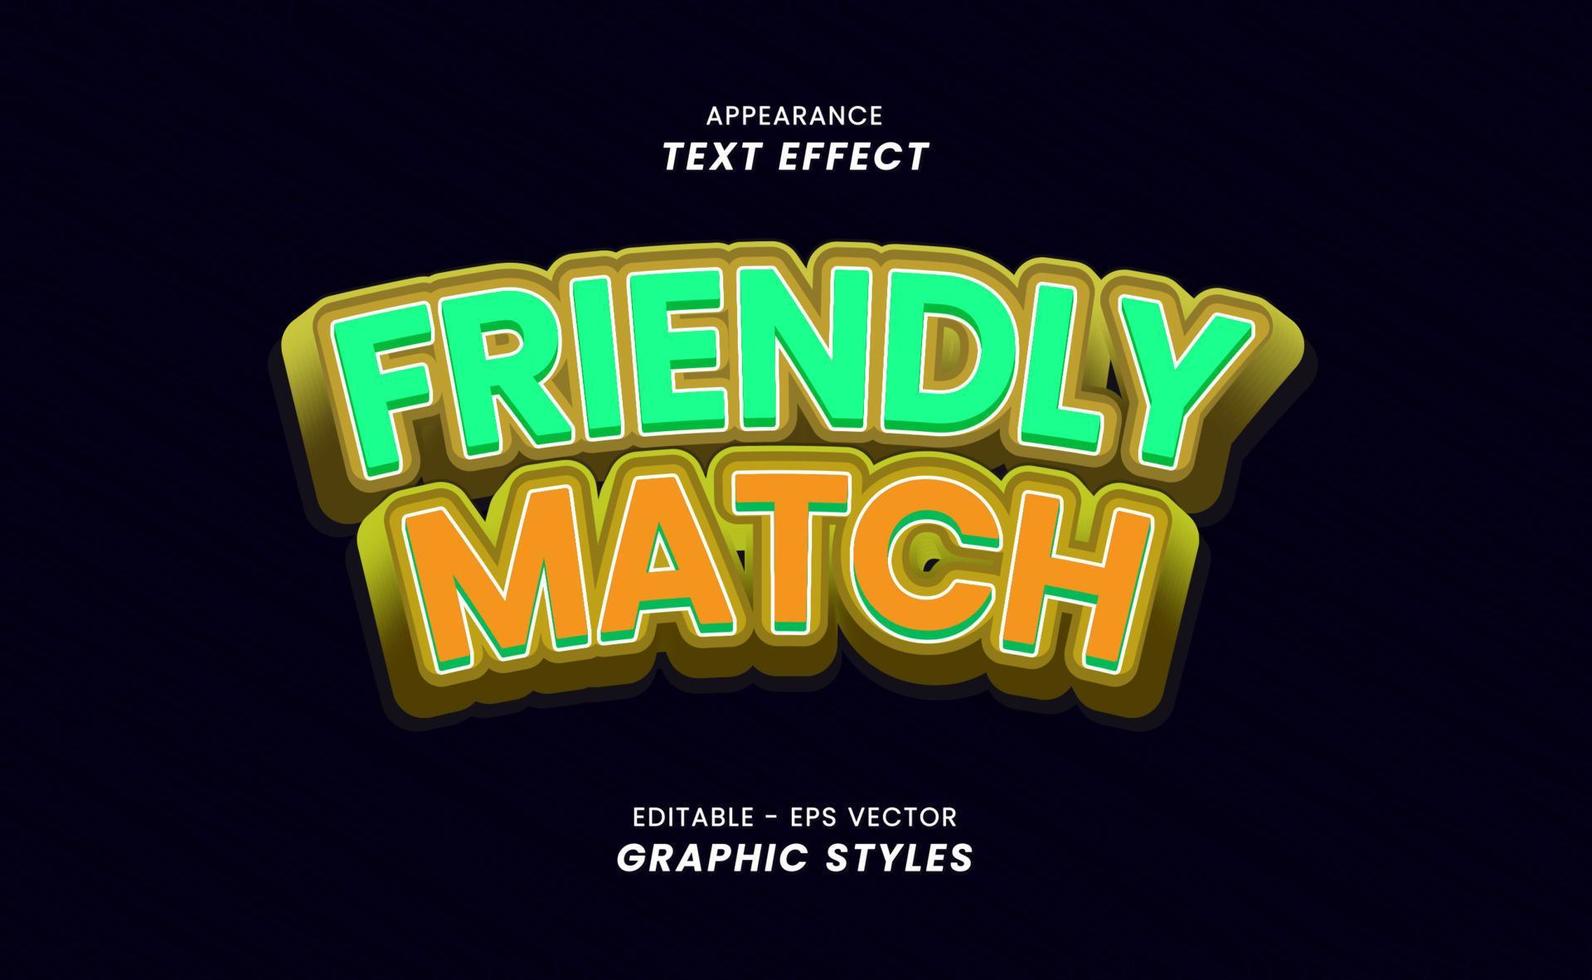 utseende text effekt - text vänlig match är redigerbar. grafisk stilar vektor